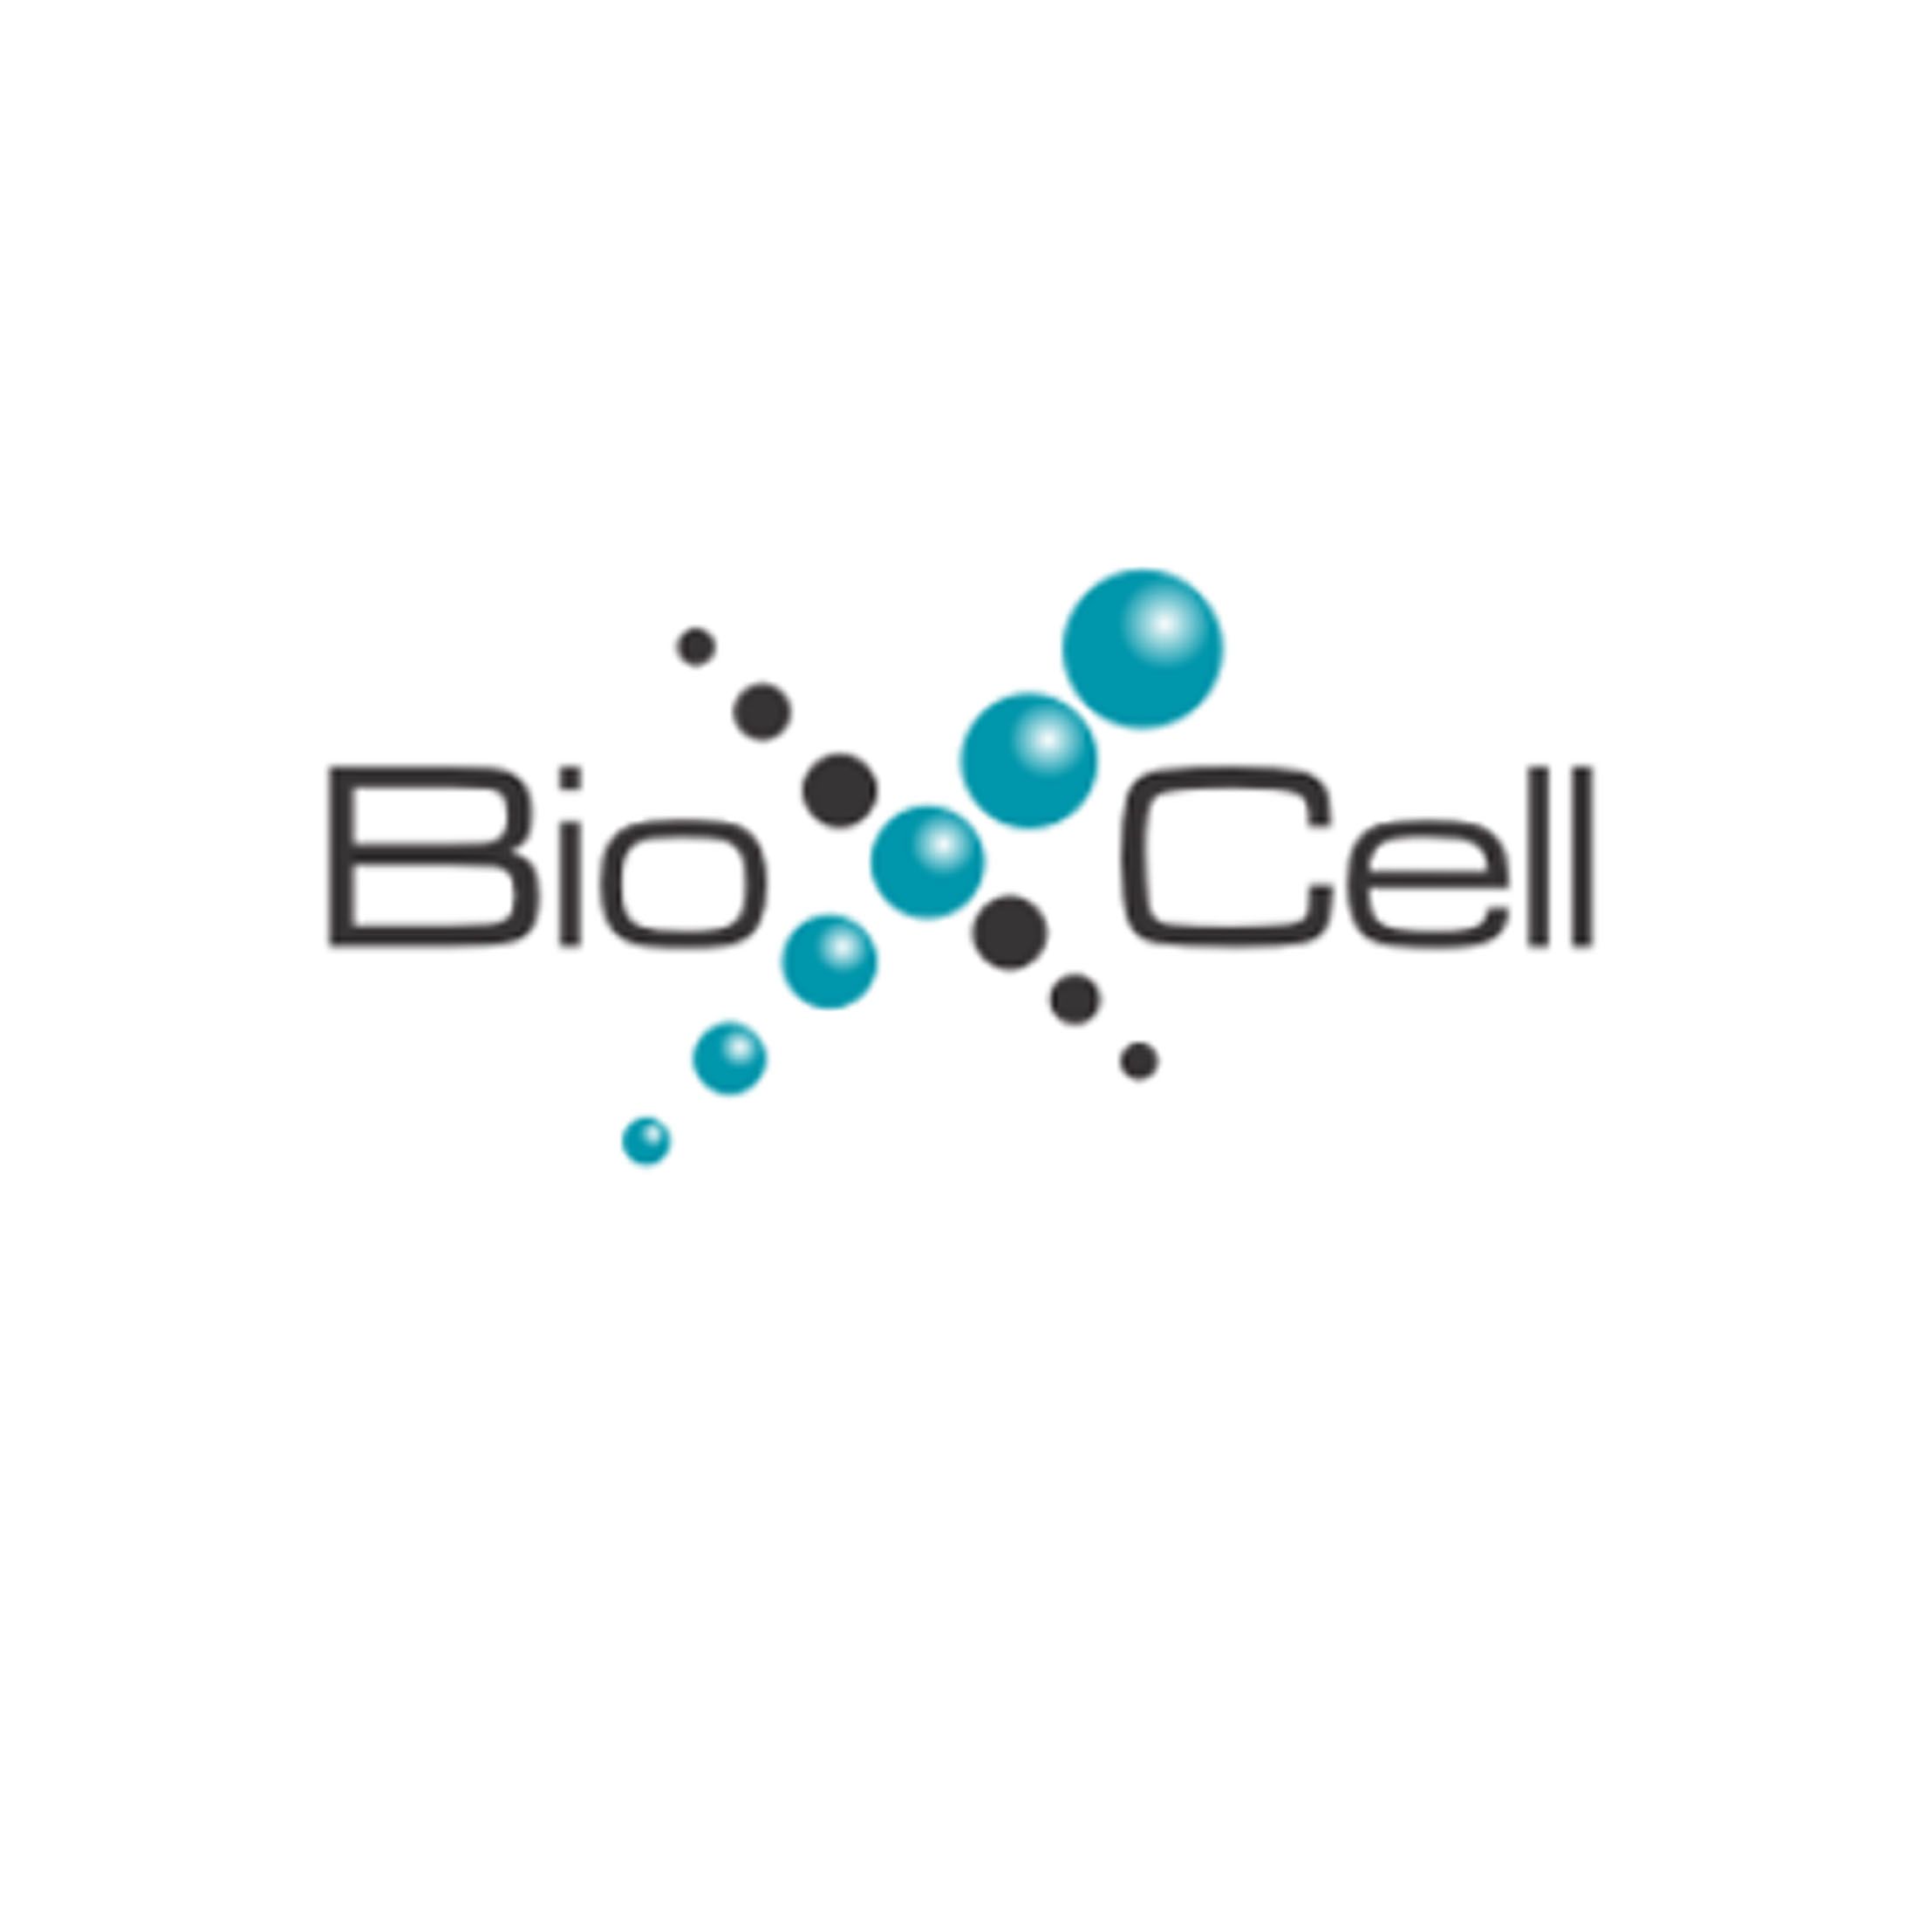 Bio X Cell组织培养生产抗体，亲和层析法纯化抗体，现货